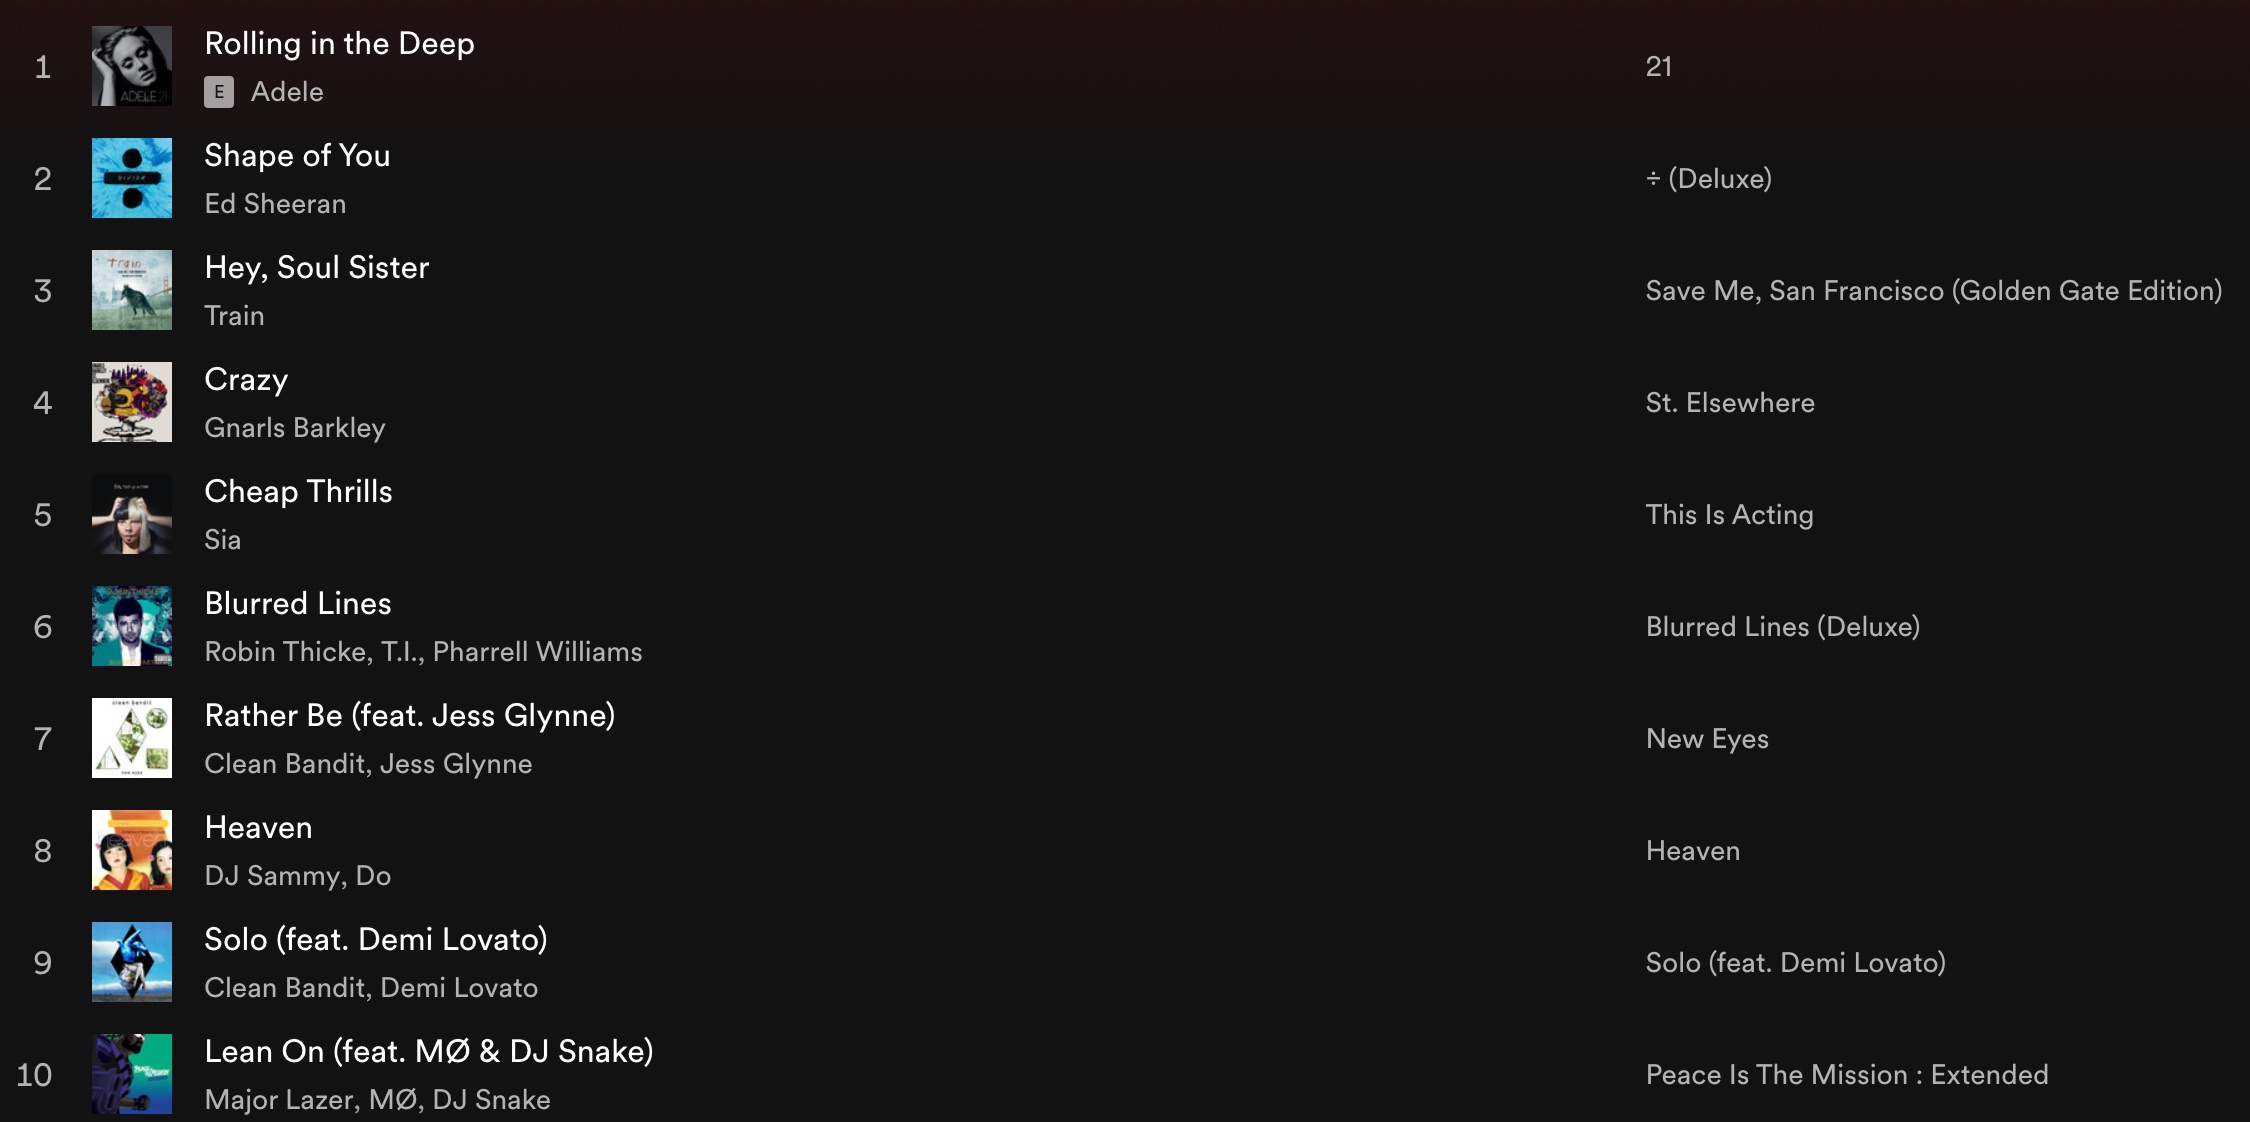 Lista de lo más buscado en los primeros 20 años de Shazam en Spotify